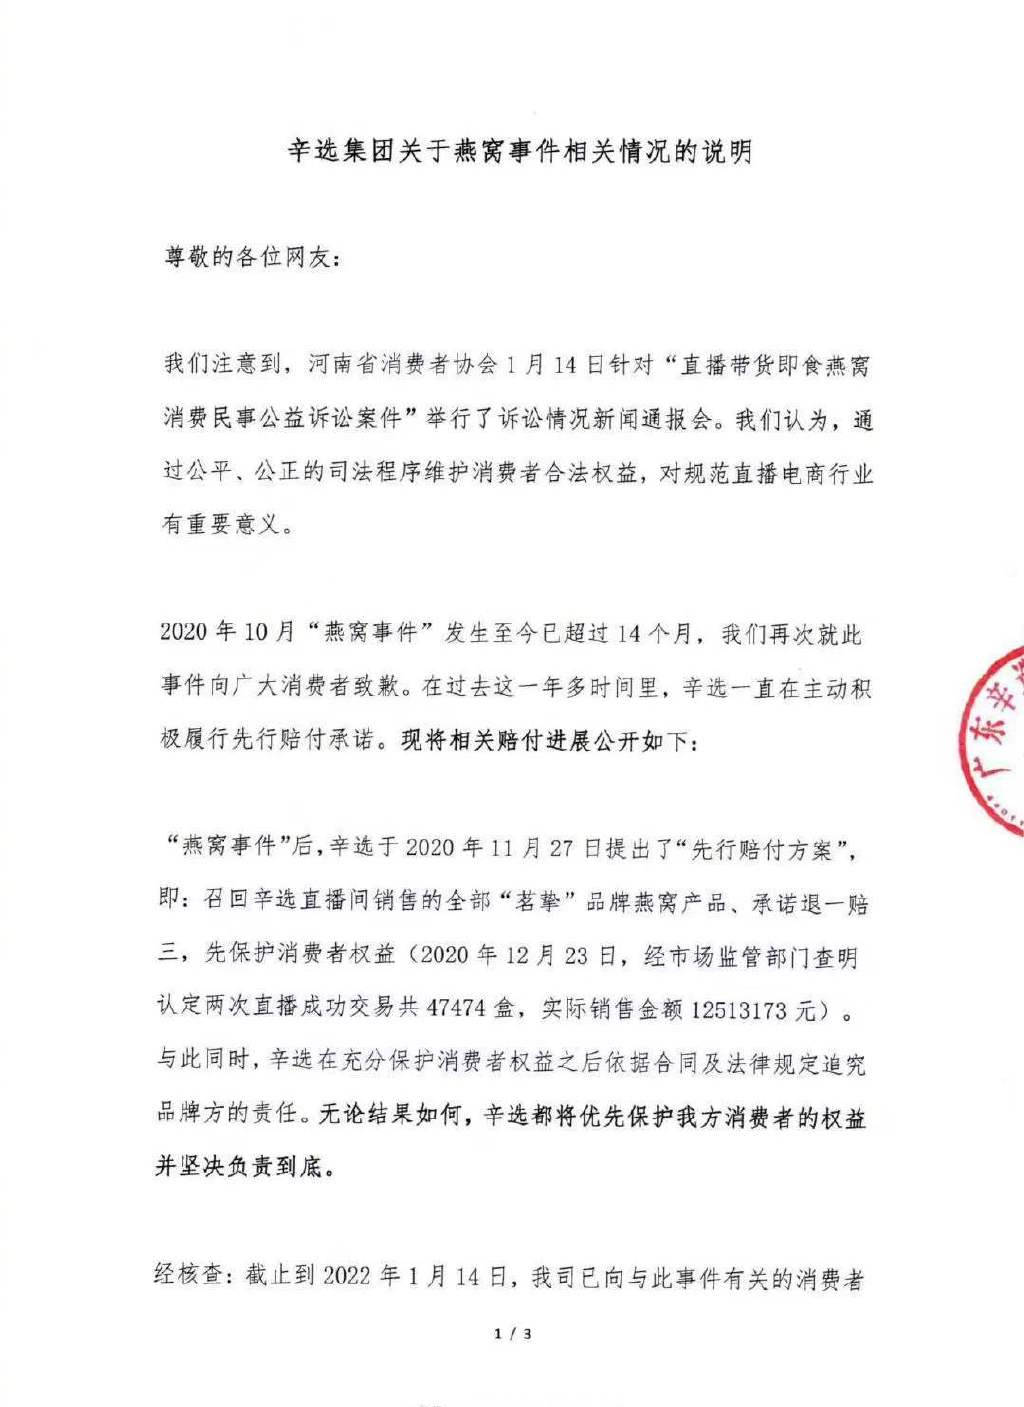 河南消协诉求辛巴及3公司退赔近8000万元 辛选集团回应